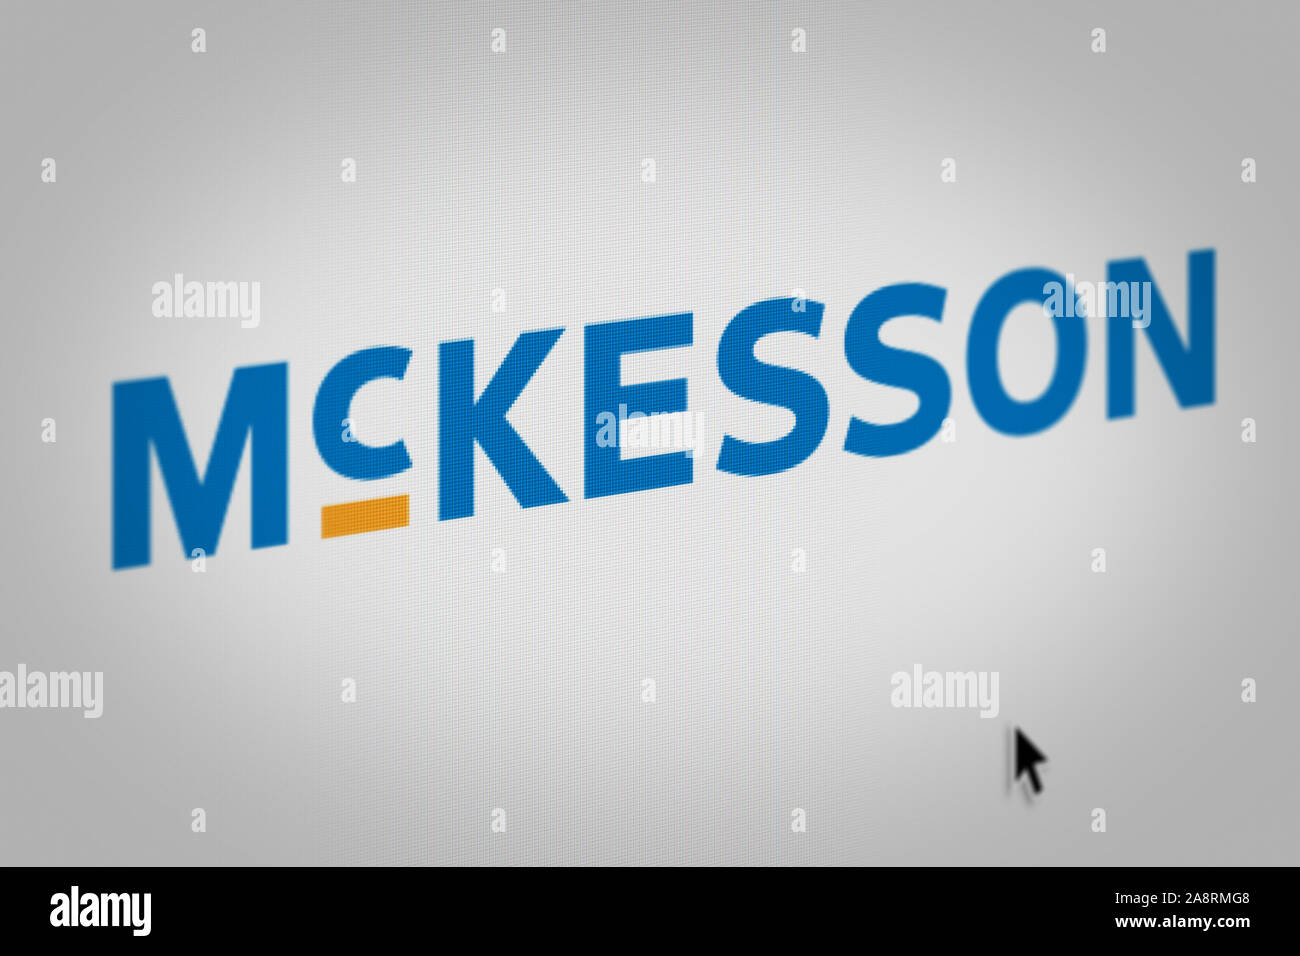 mckesson logo vector